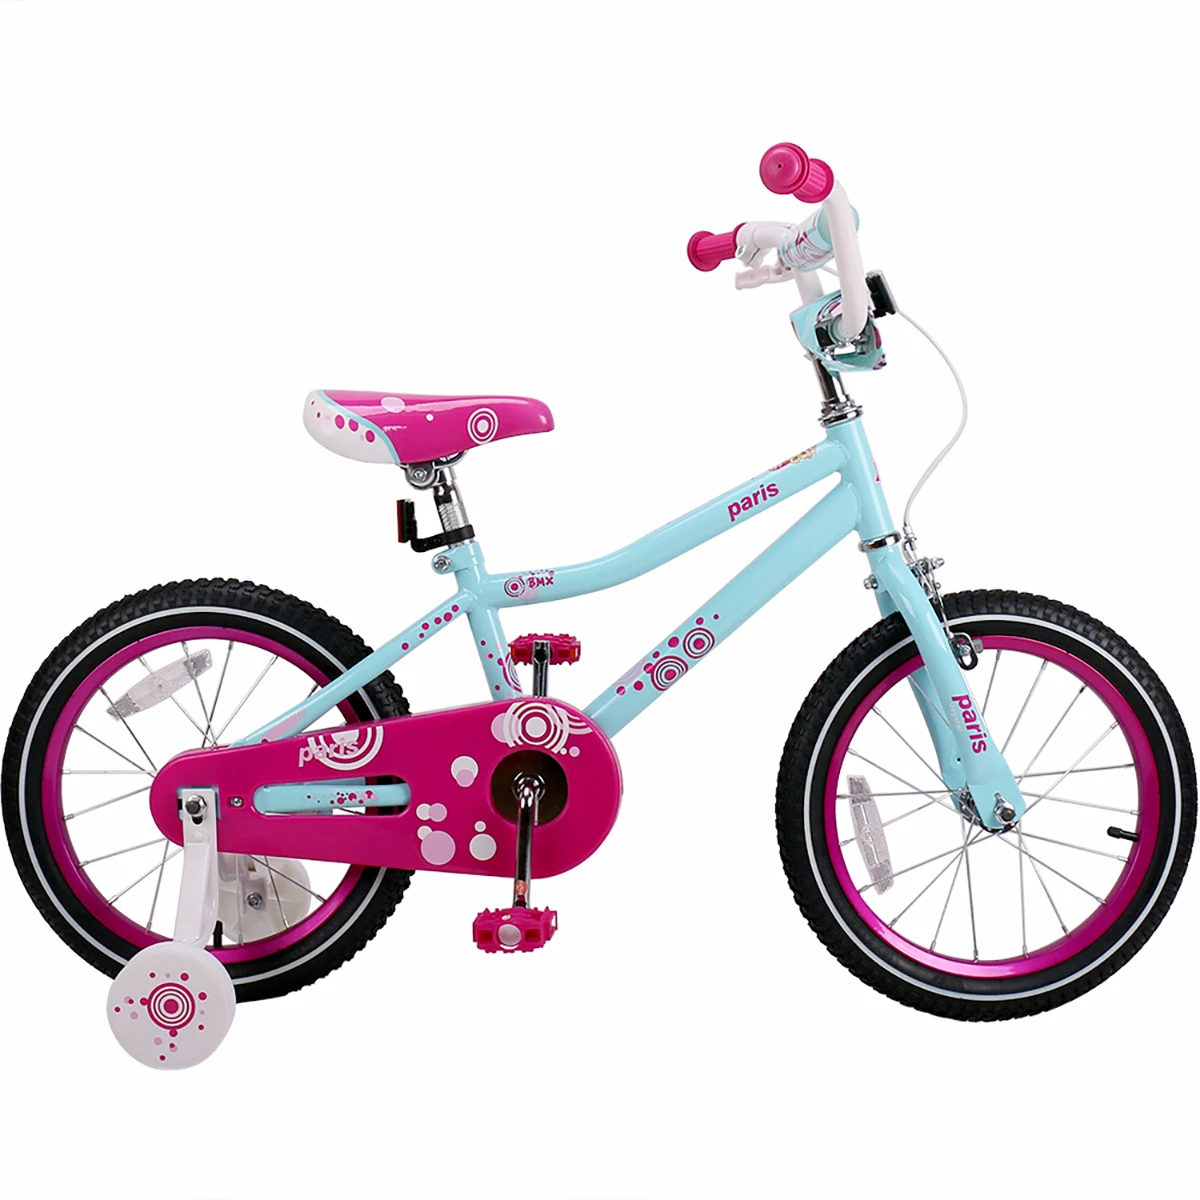 Купить детский велосипед для девочки авито. Велосипед Glory детский 16 дюймов. Велосипед детский для девочки Cube 200. Велосипед для девочки 3 года. Дети с велосипедом.